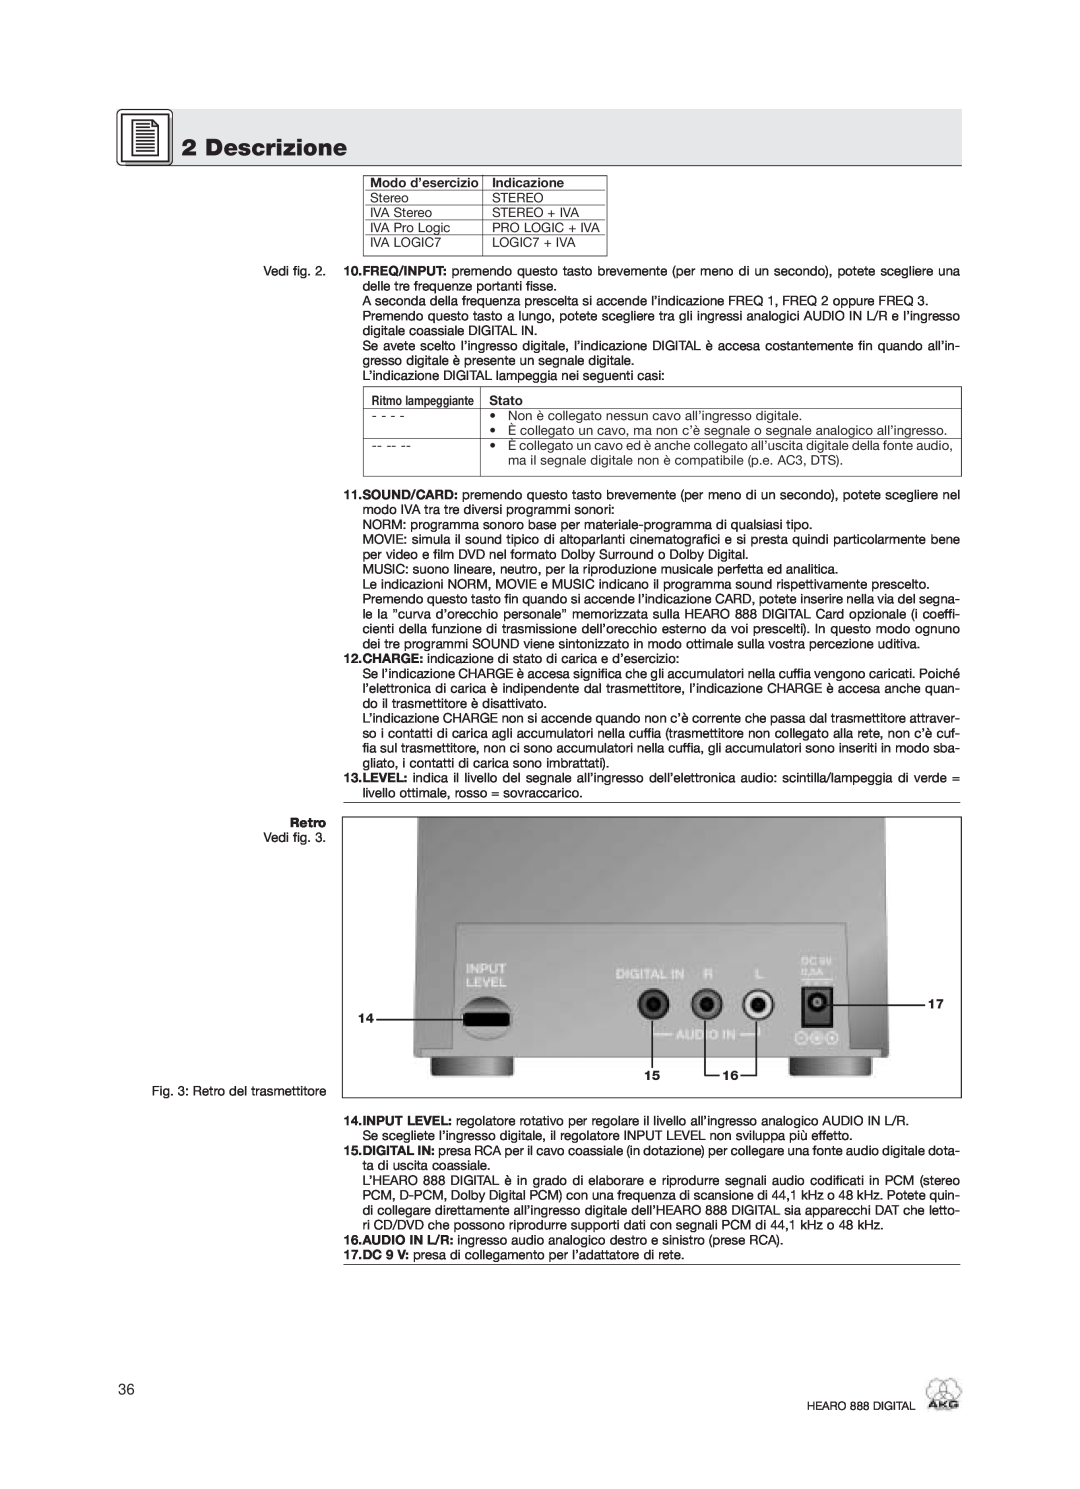 AKG Acoustics HEARO 888 specifications Descrizione, Indicazione, Stato, Retro, 17 14 15 